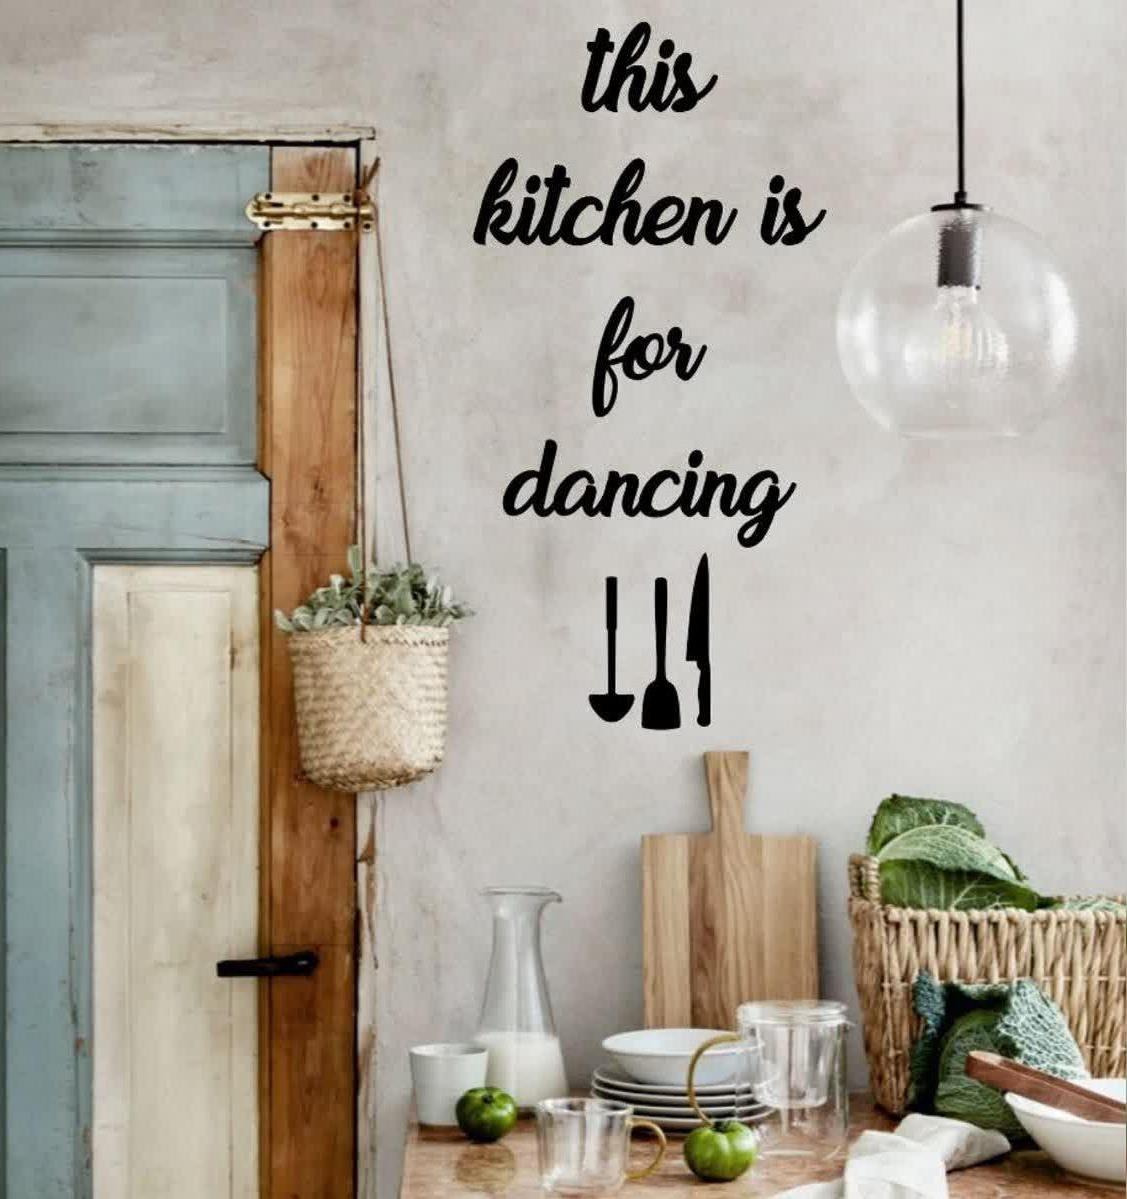 استیکر دیواری آشپزخانه رقص و شادی ،تابلو انگلیسی برای دیوار آشچزخانه دکوری  کیچن 